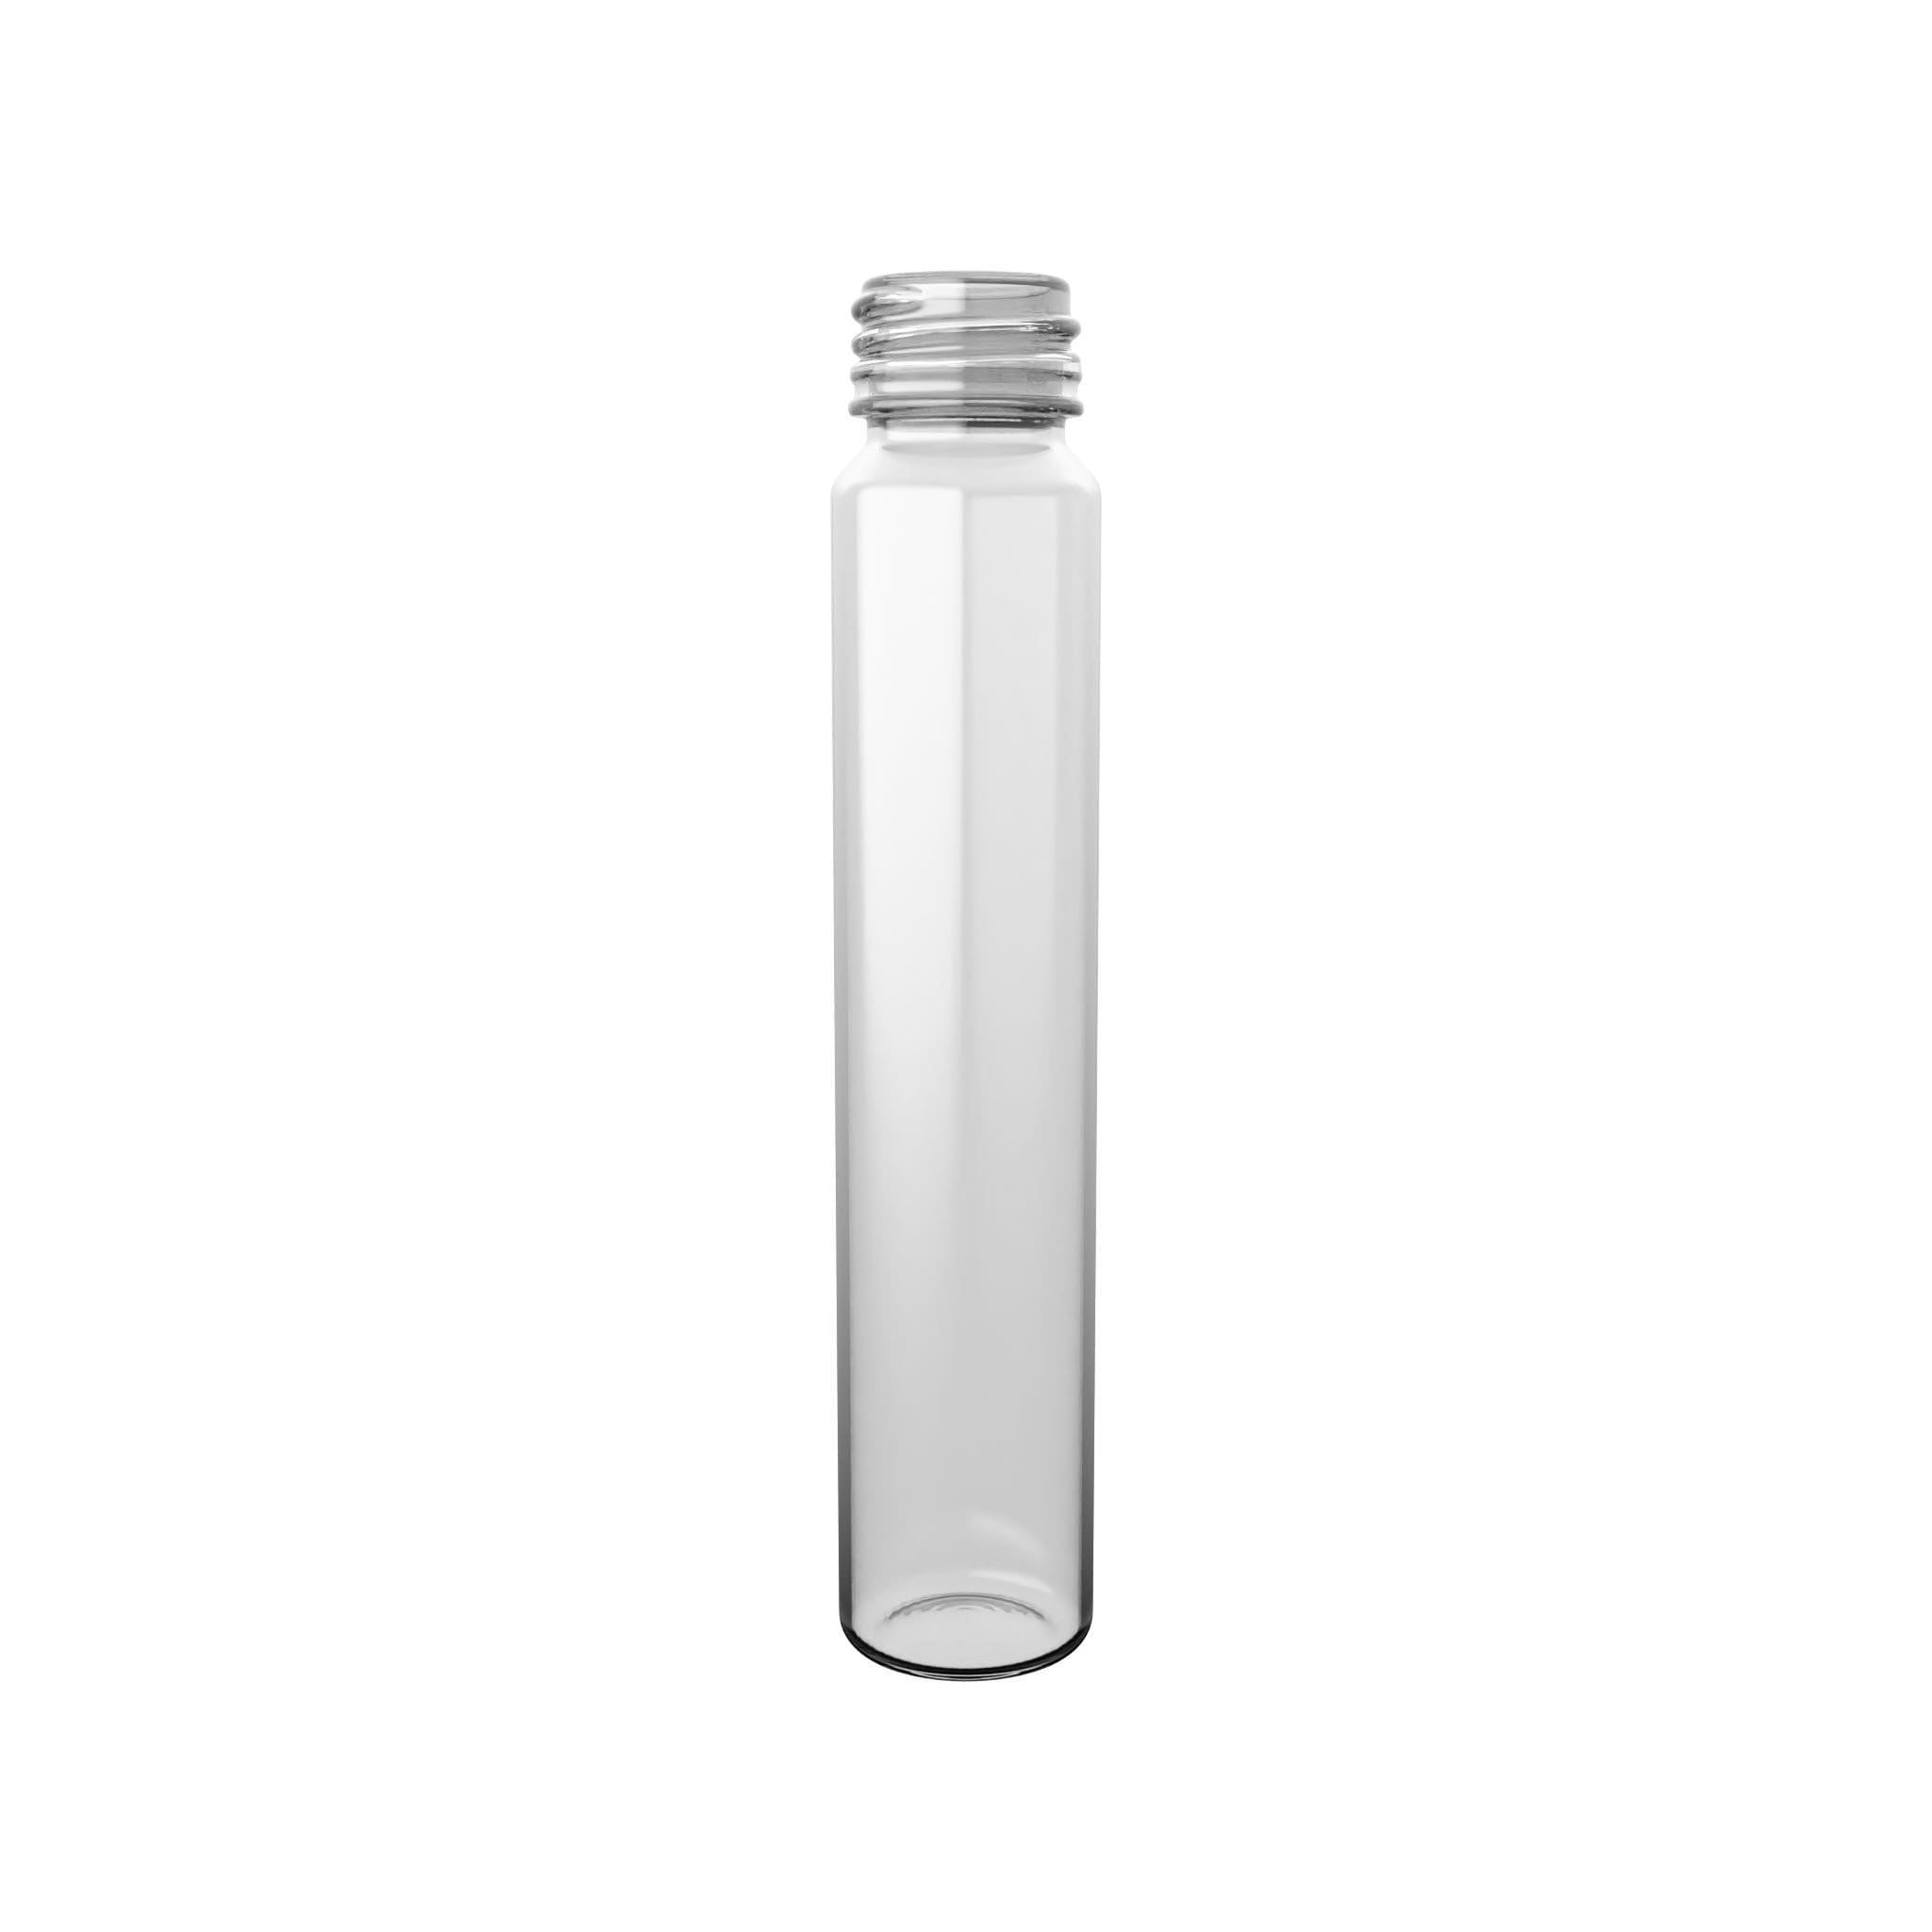 Kleine PET-Flasche TUBO ROUND von EPROPLAST mit nur 25 ml Volumen.